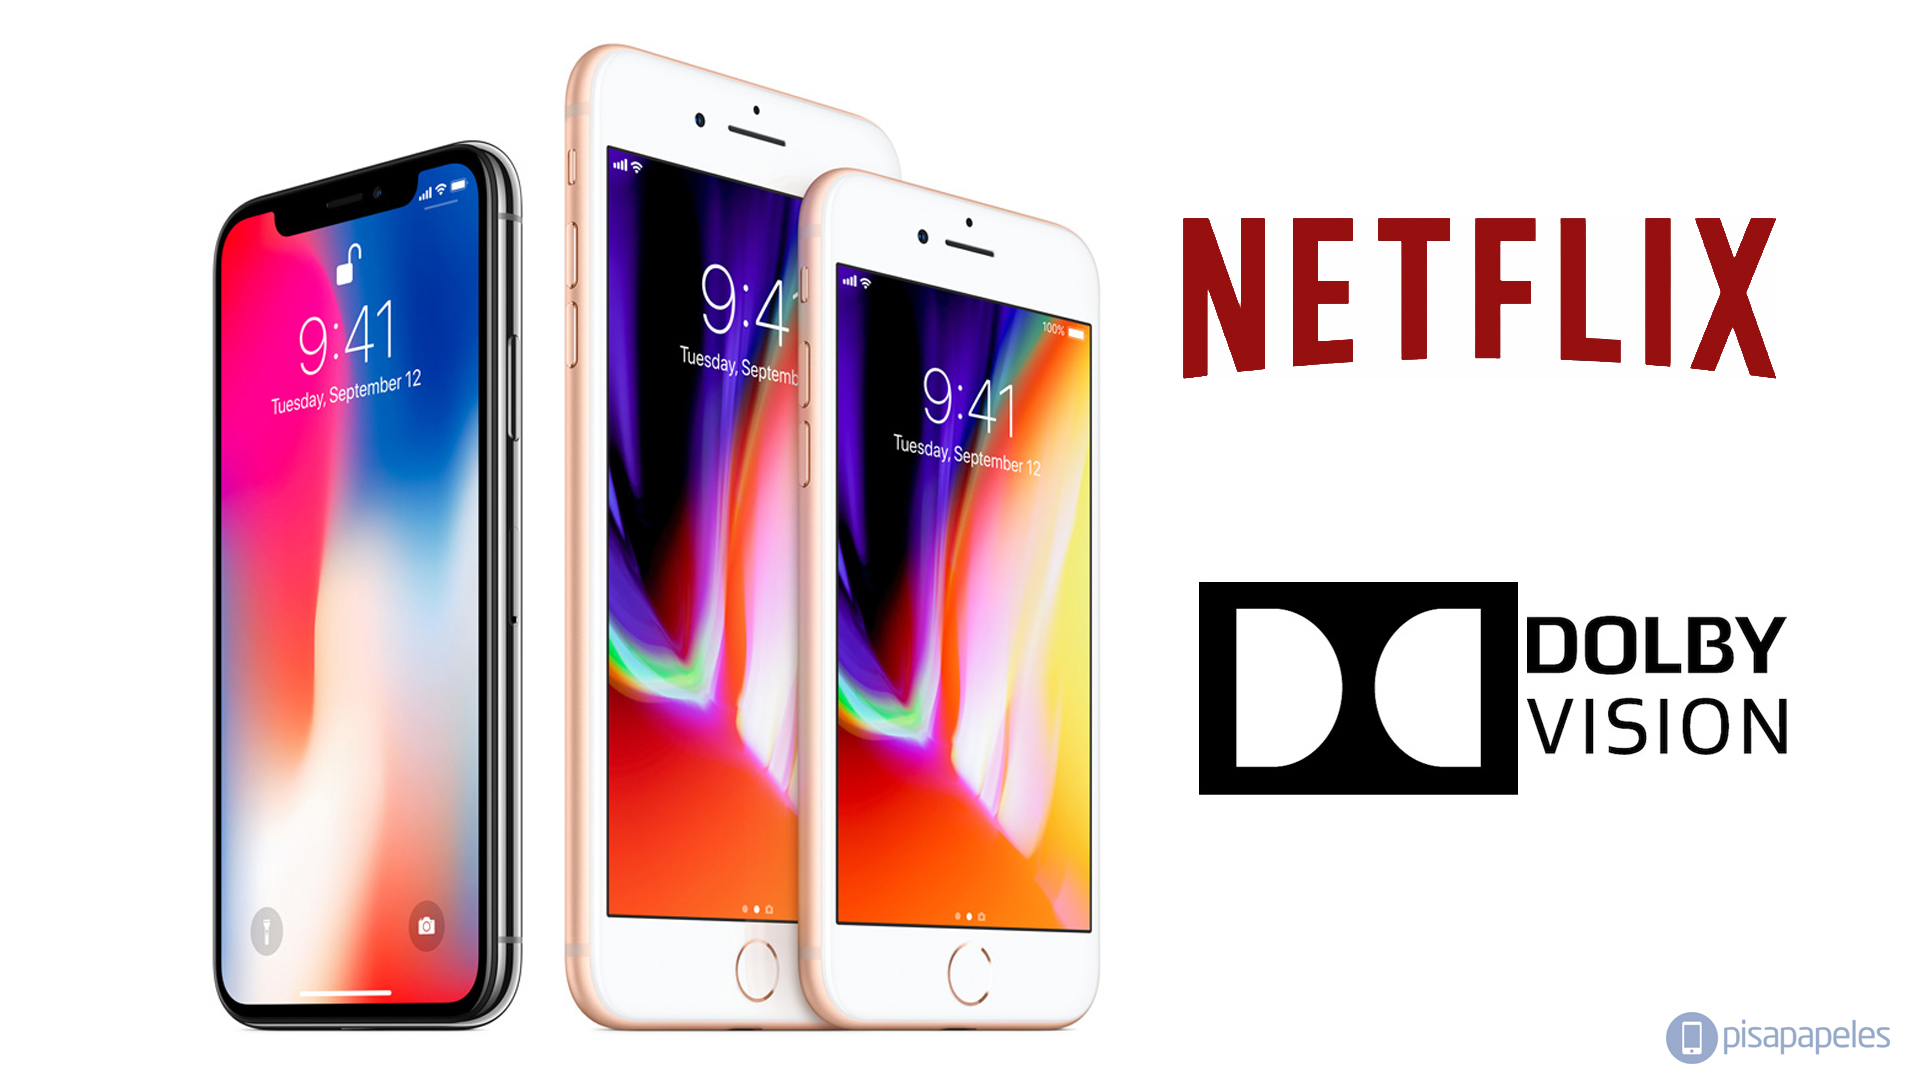 Netflix anuncia compatibilidad con Dolby Vision de los iPhone 8/8 Plus y iPhone X